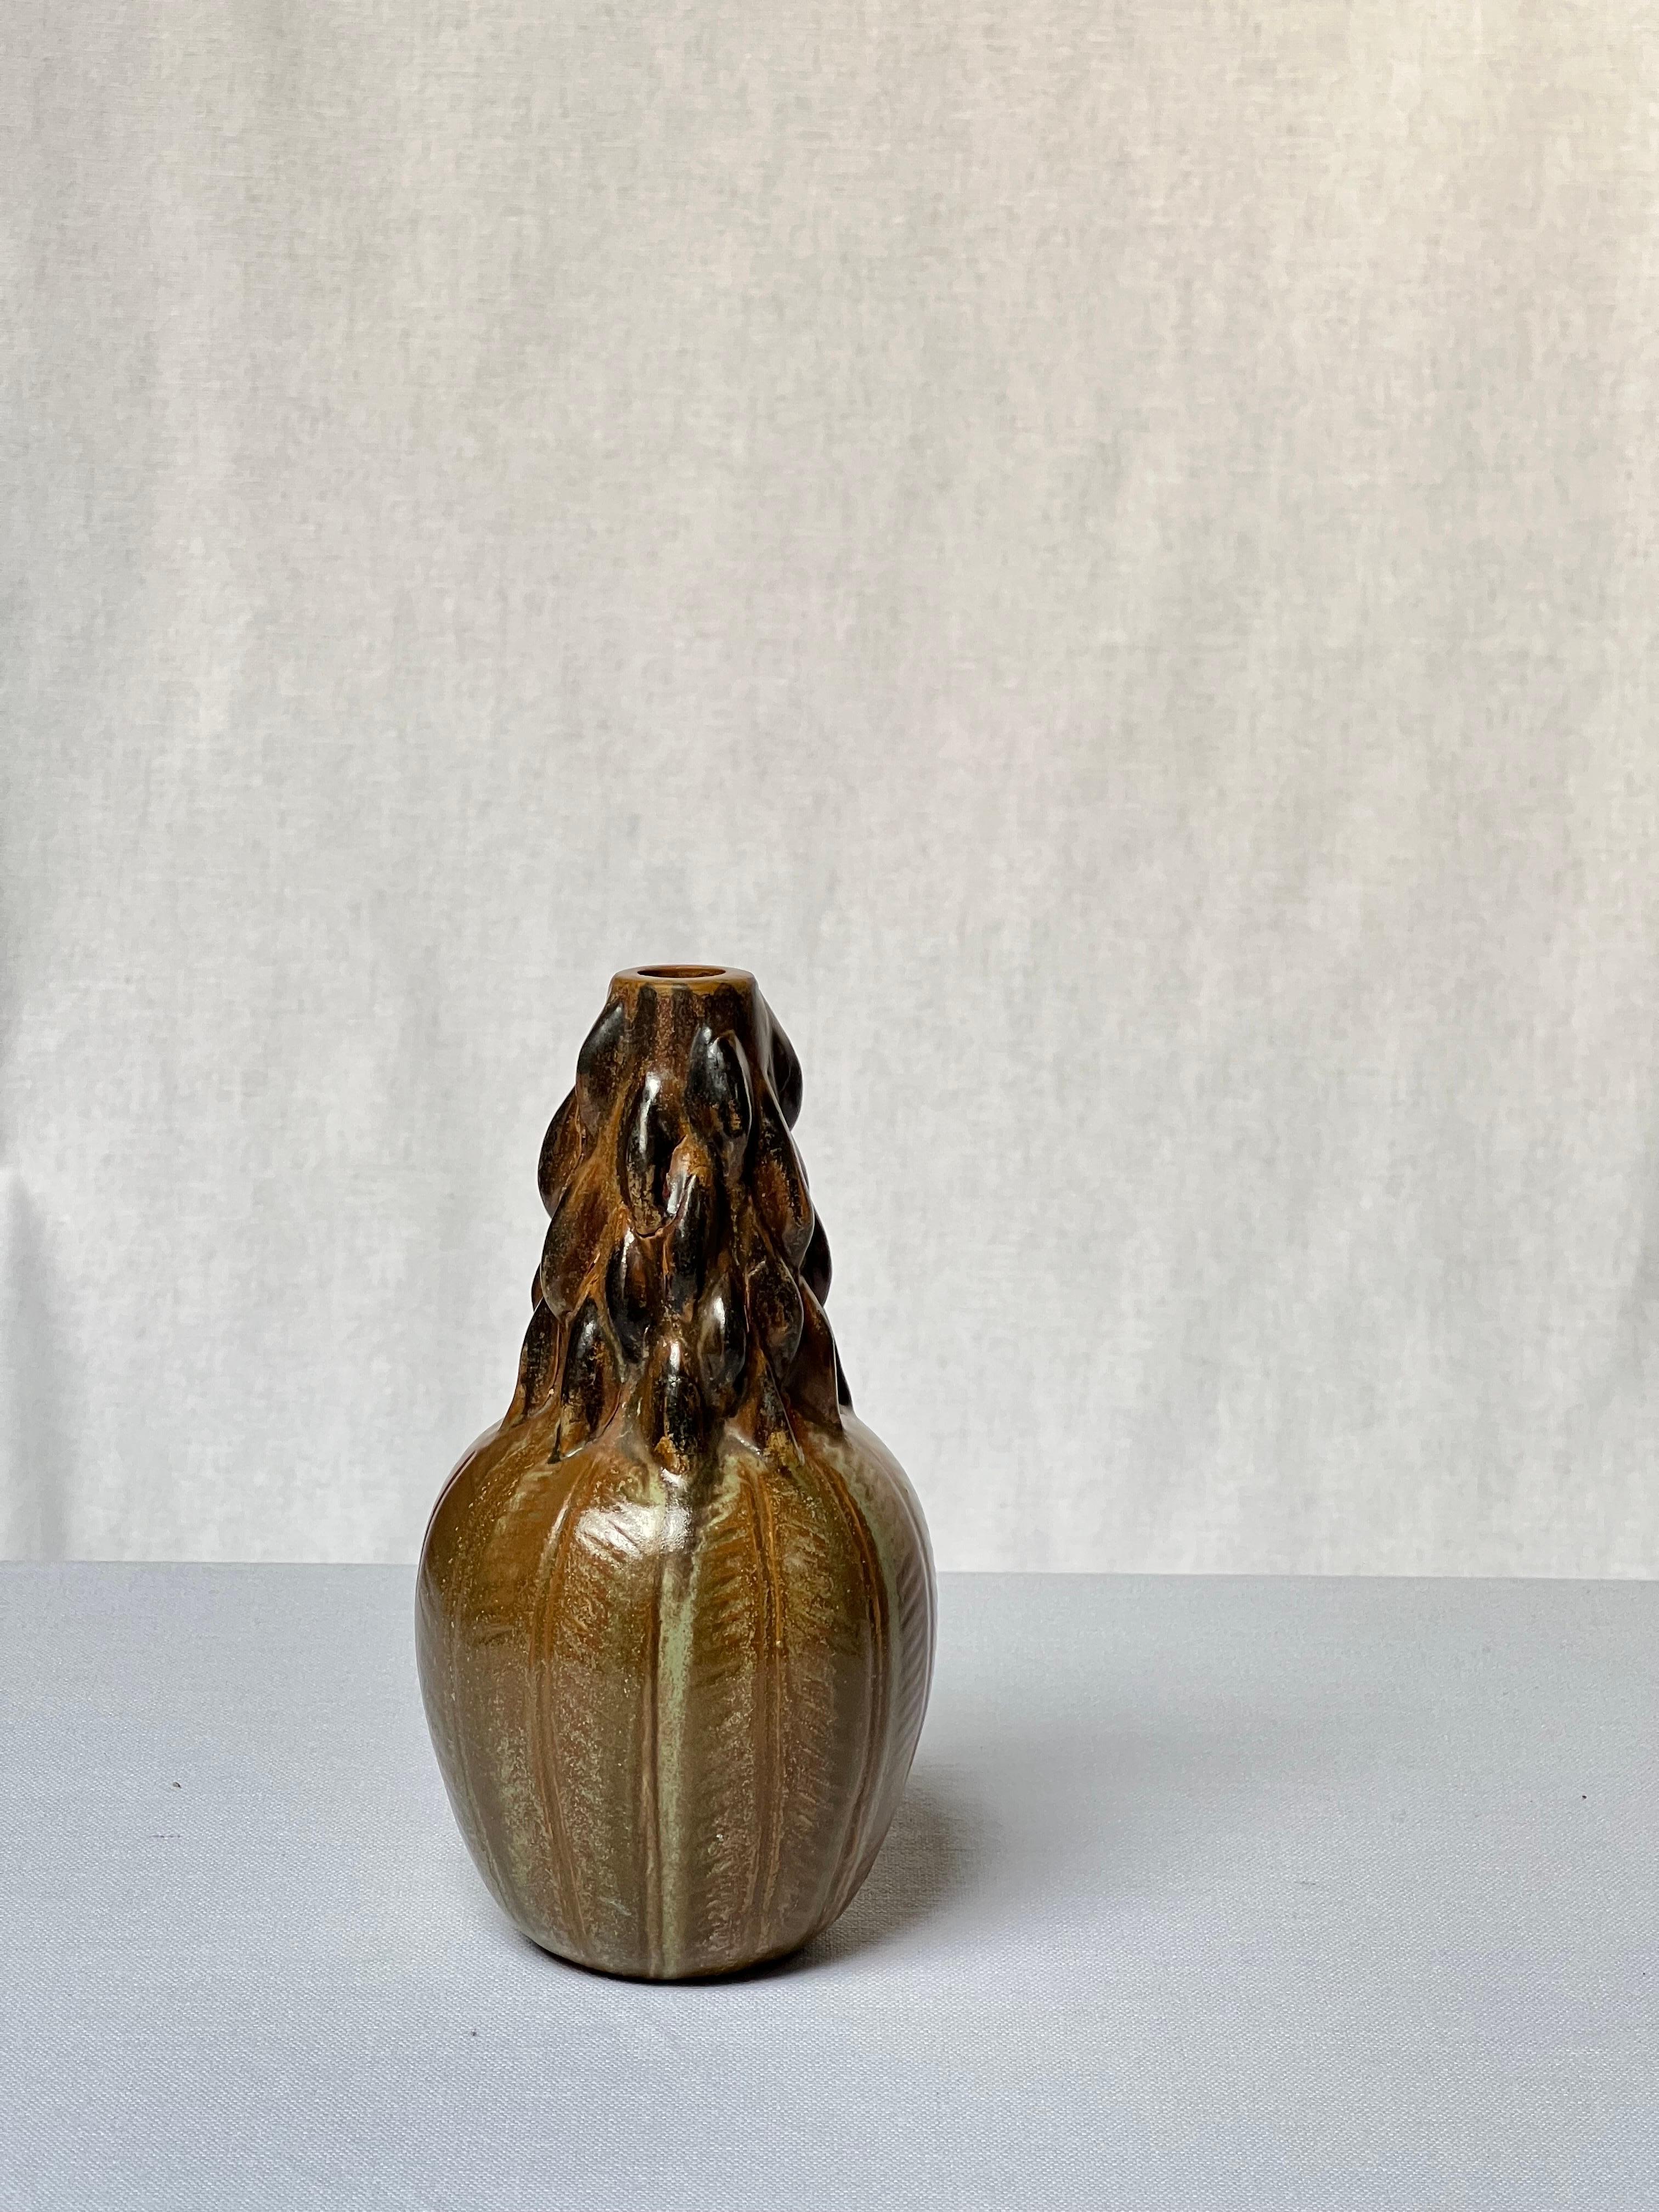 Einzigartige Vase von oder in der Art von Axel Salto. Schöne Glasur und Details. Es gibt verschiedene Brauntöne und Grüntöne. Passt in jedes Interieur, eine wahre Schönheit.




Axel Johannes Salto, geboren am 17. November 1889 in Kopenhagen und